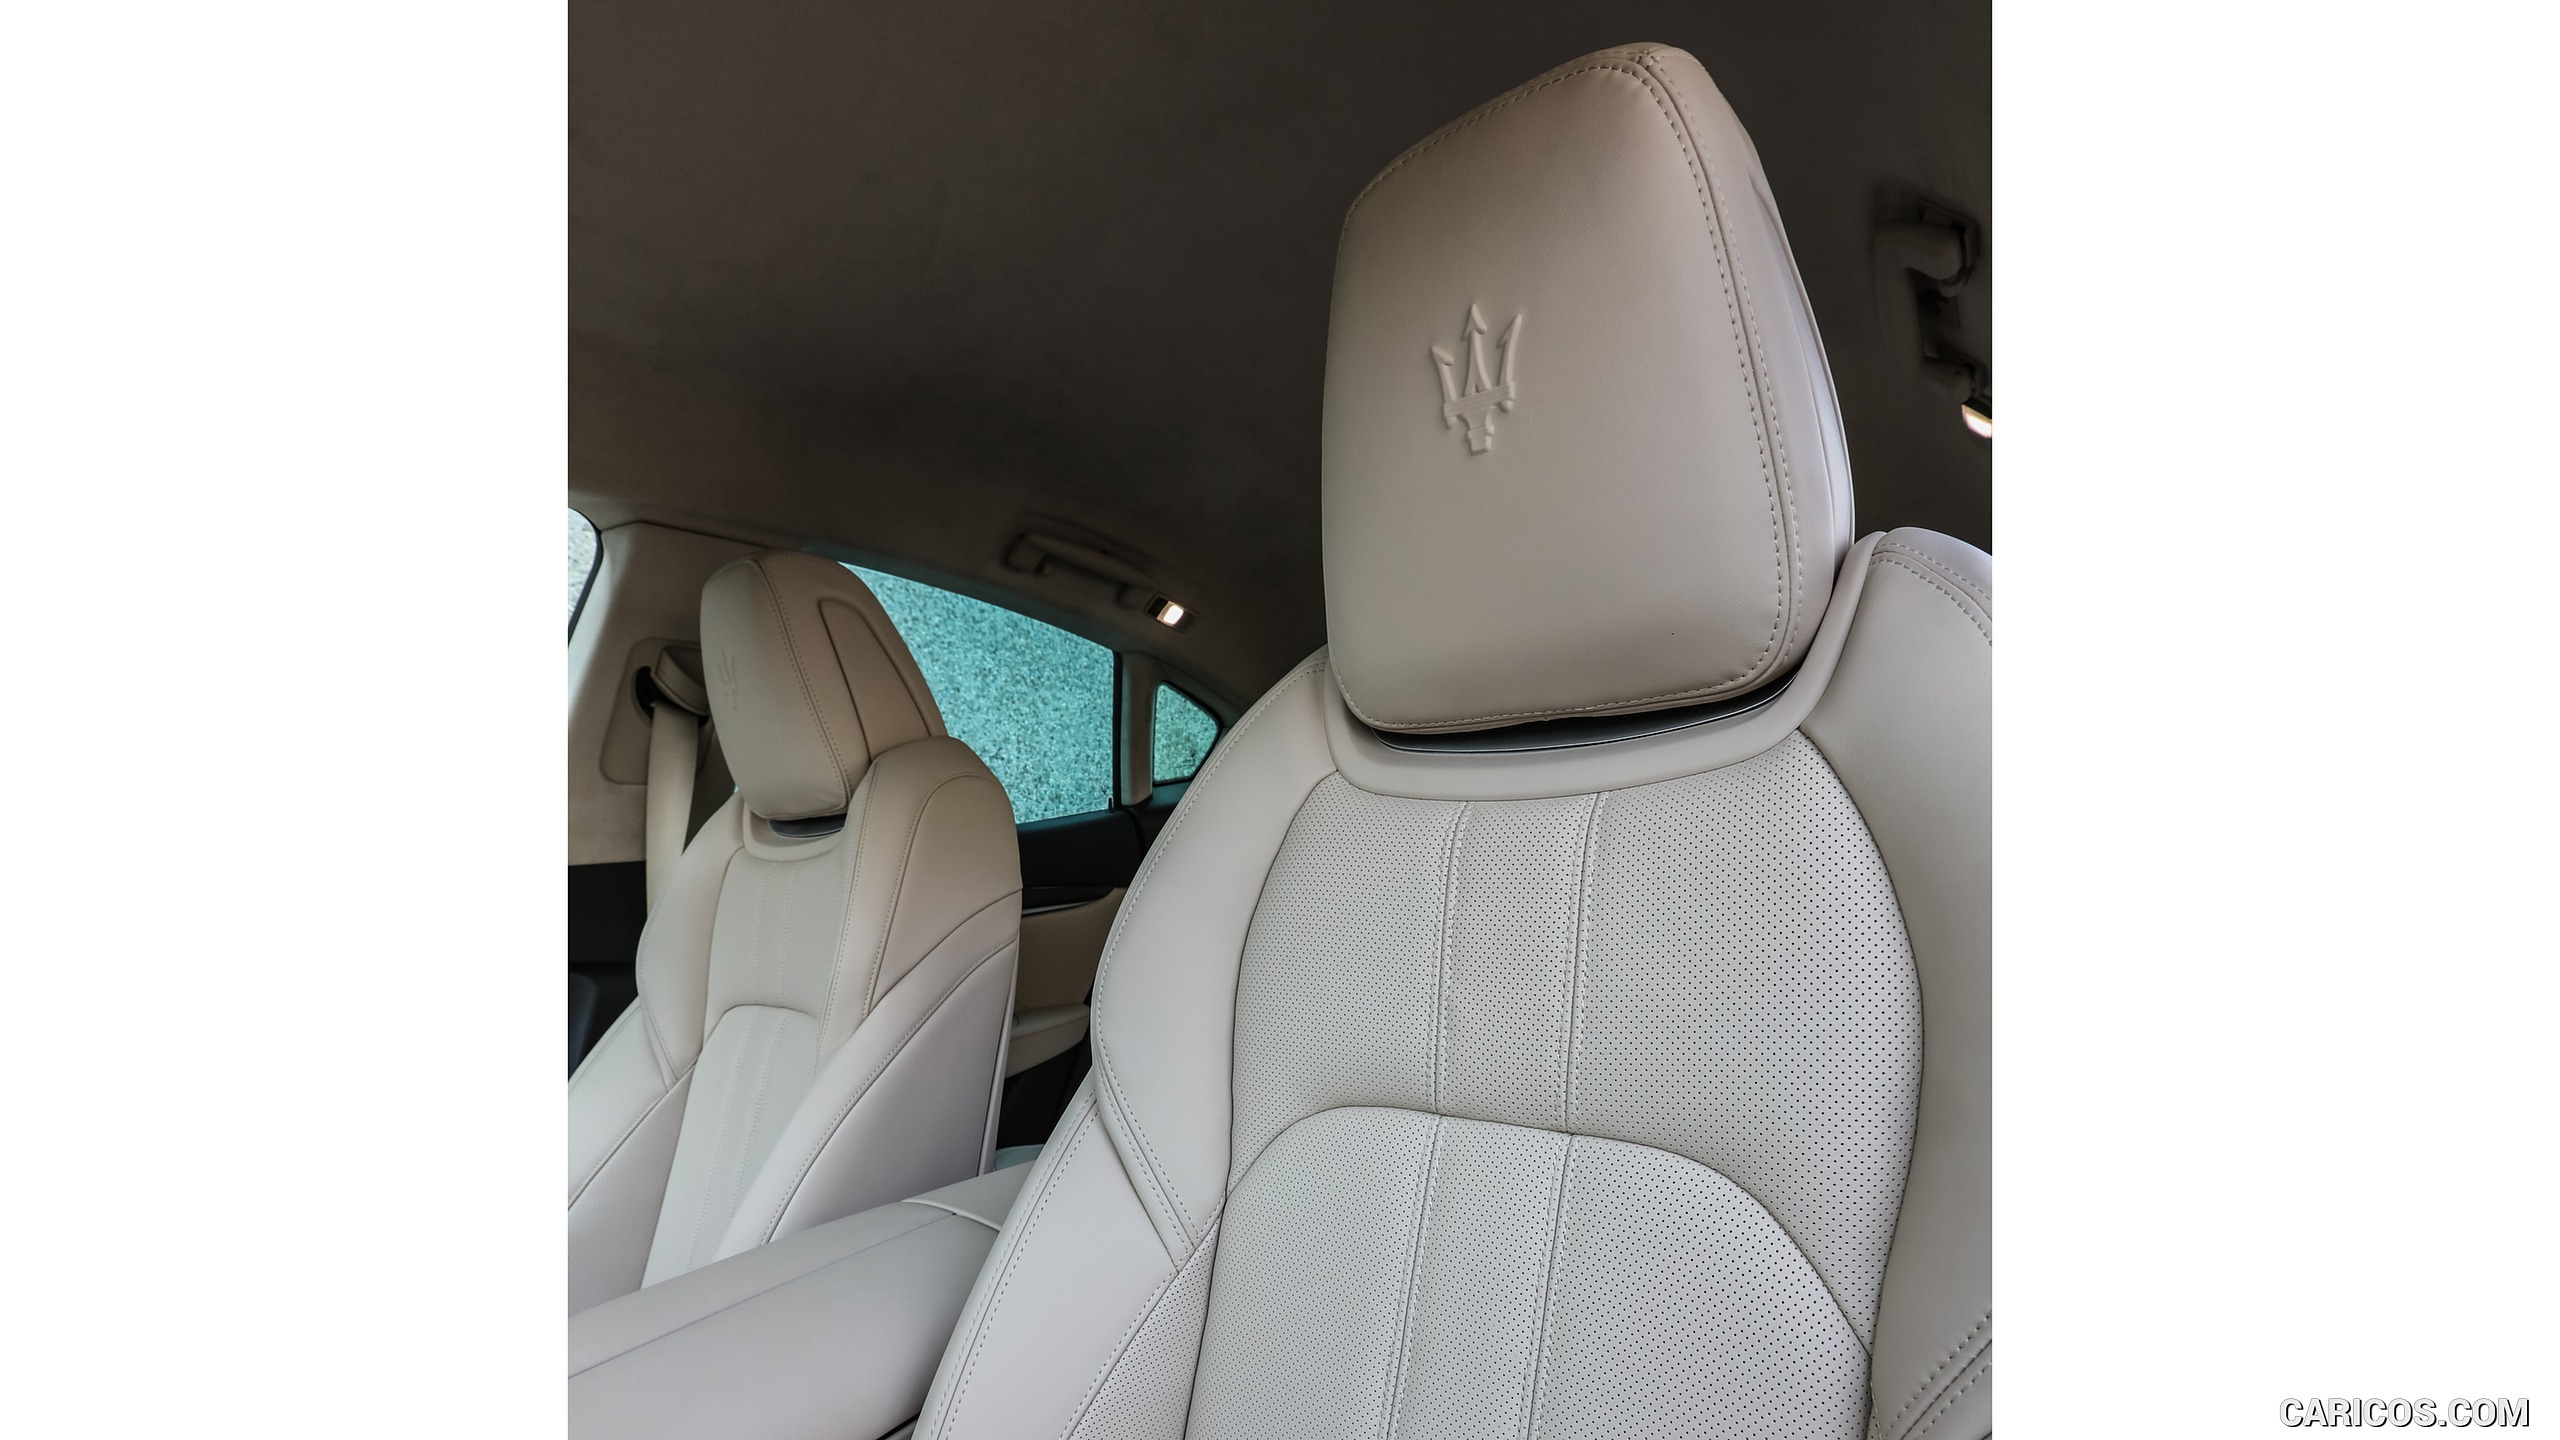 2017 Maserati Levante SUV - Interior, Front Seats, #108 of 119